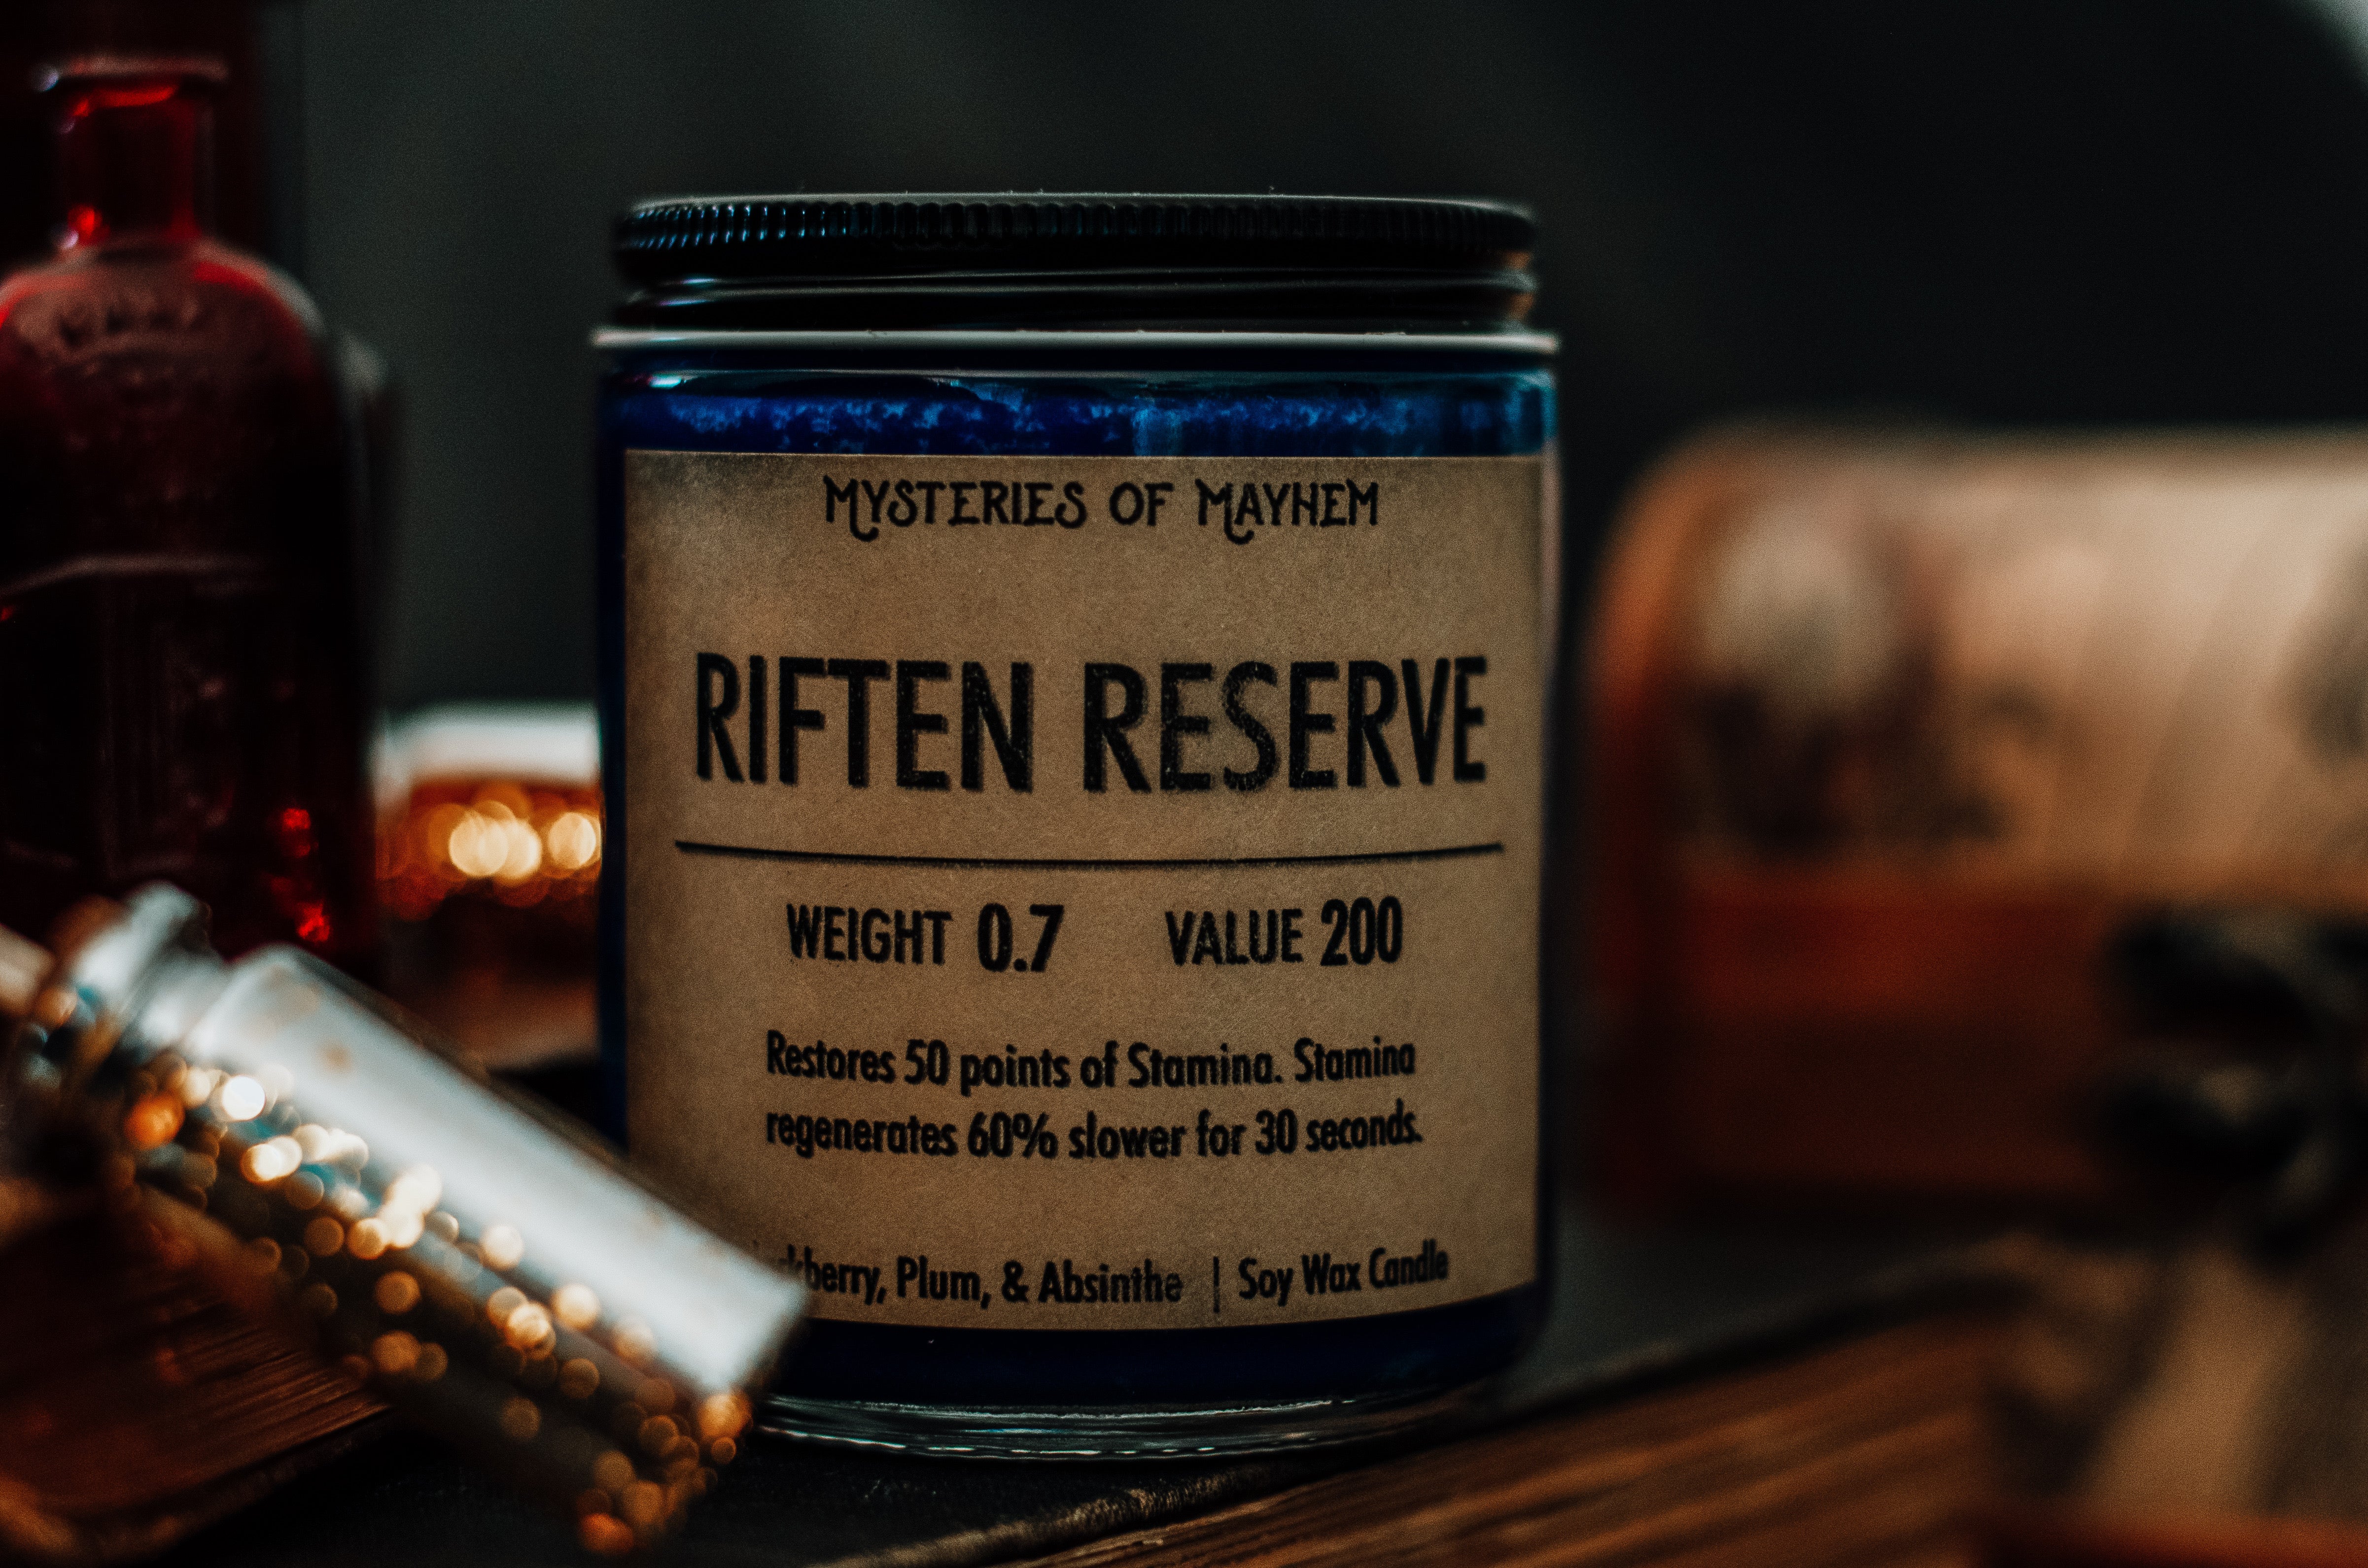 Riften Reserve - Blackberry, Plum, & Absinthe Scented